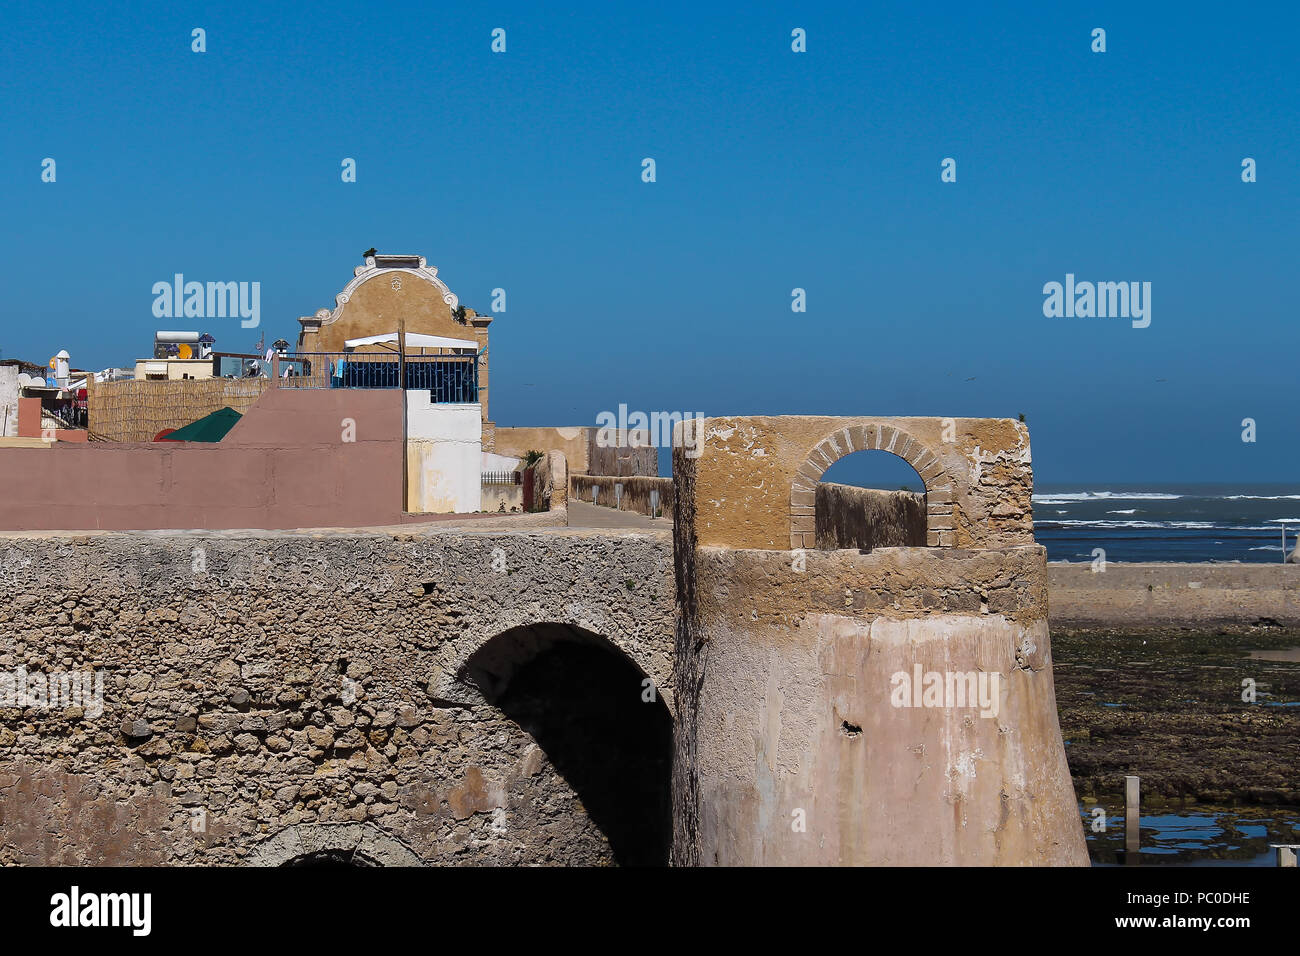 Les murs en pierre de l'ancienne forteresse portugaise à El Jadida, Maroc, sur la côte de l'océan Atlantique. Ciel bleu. Banque D'Images